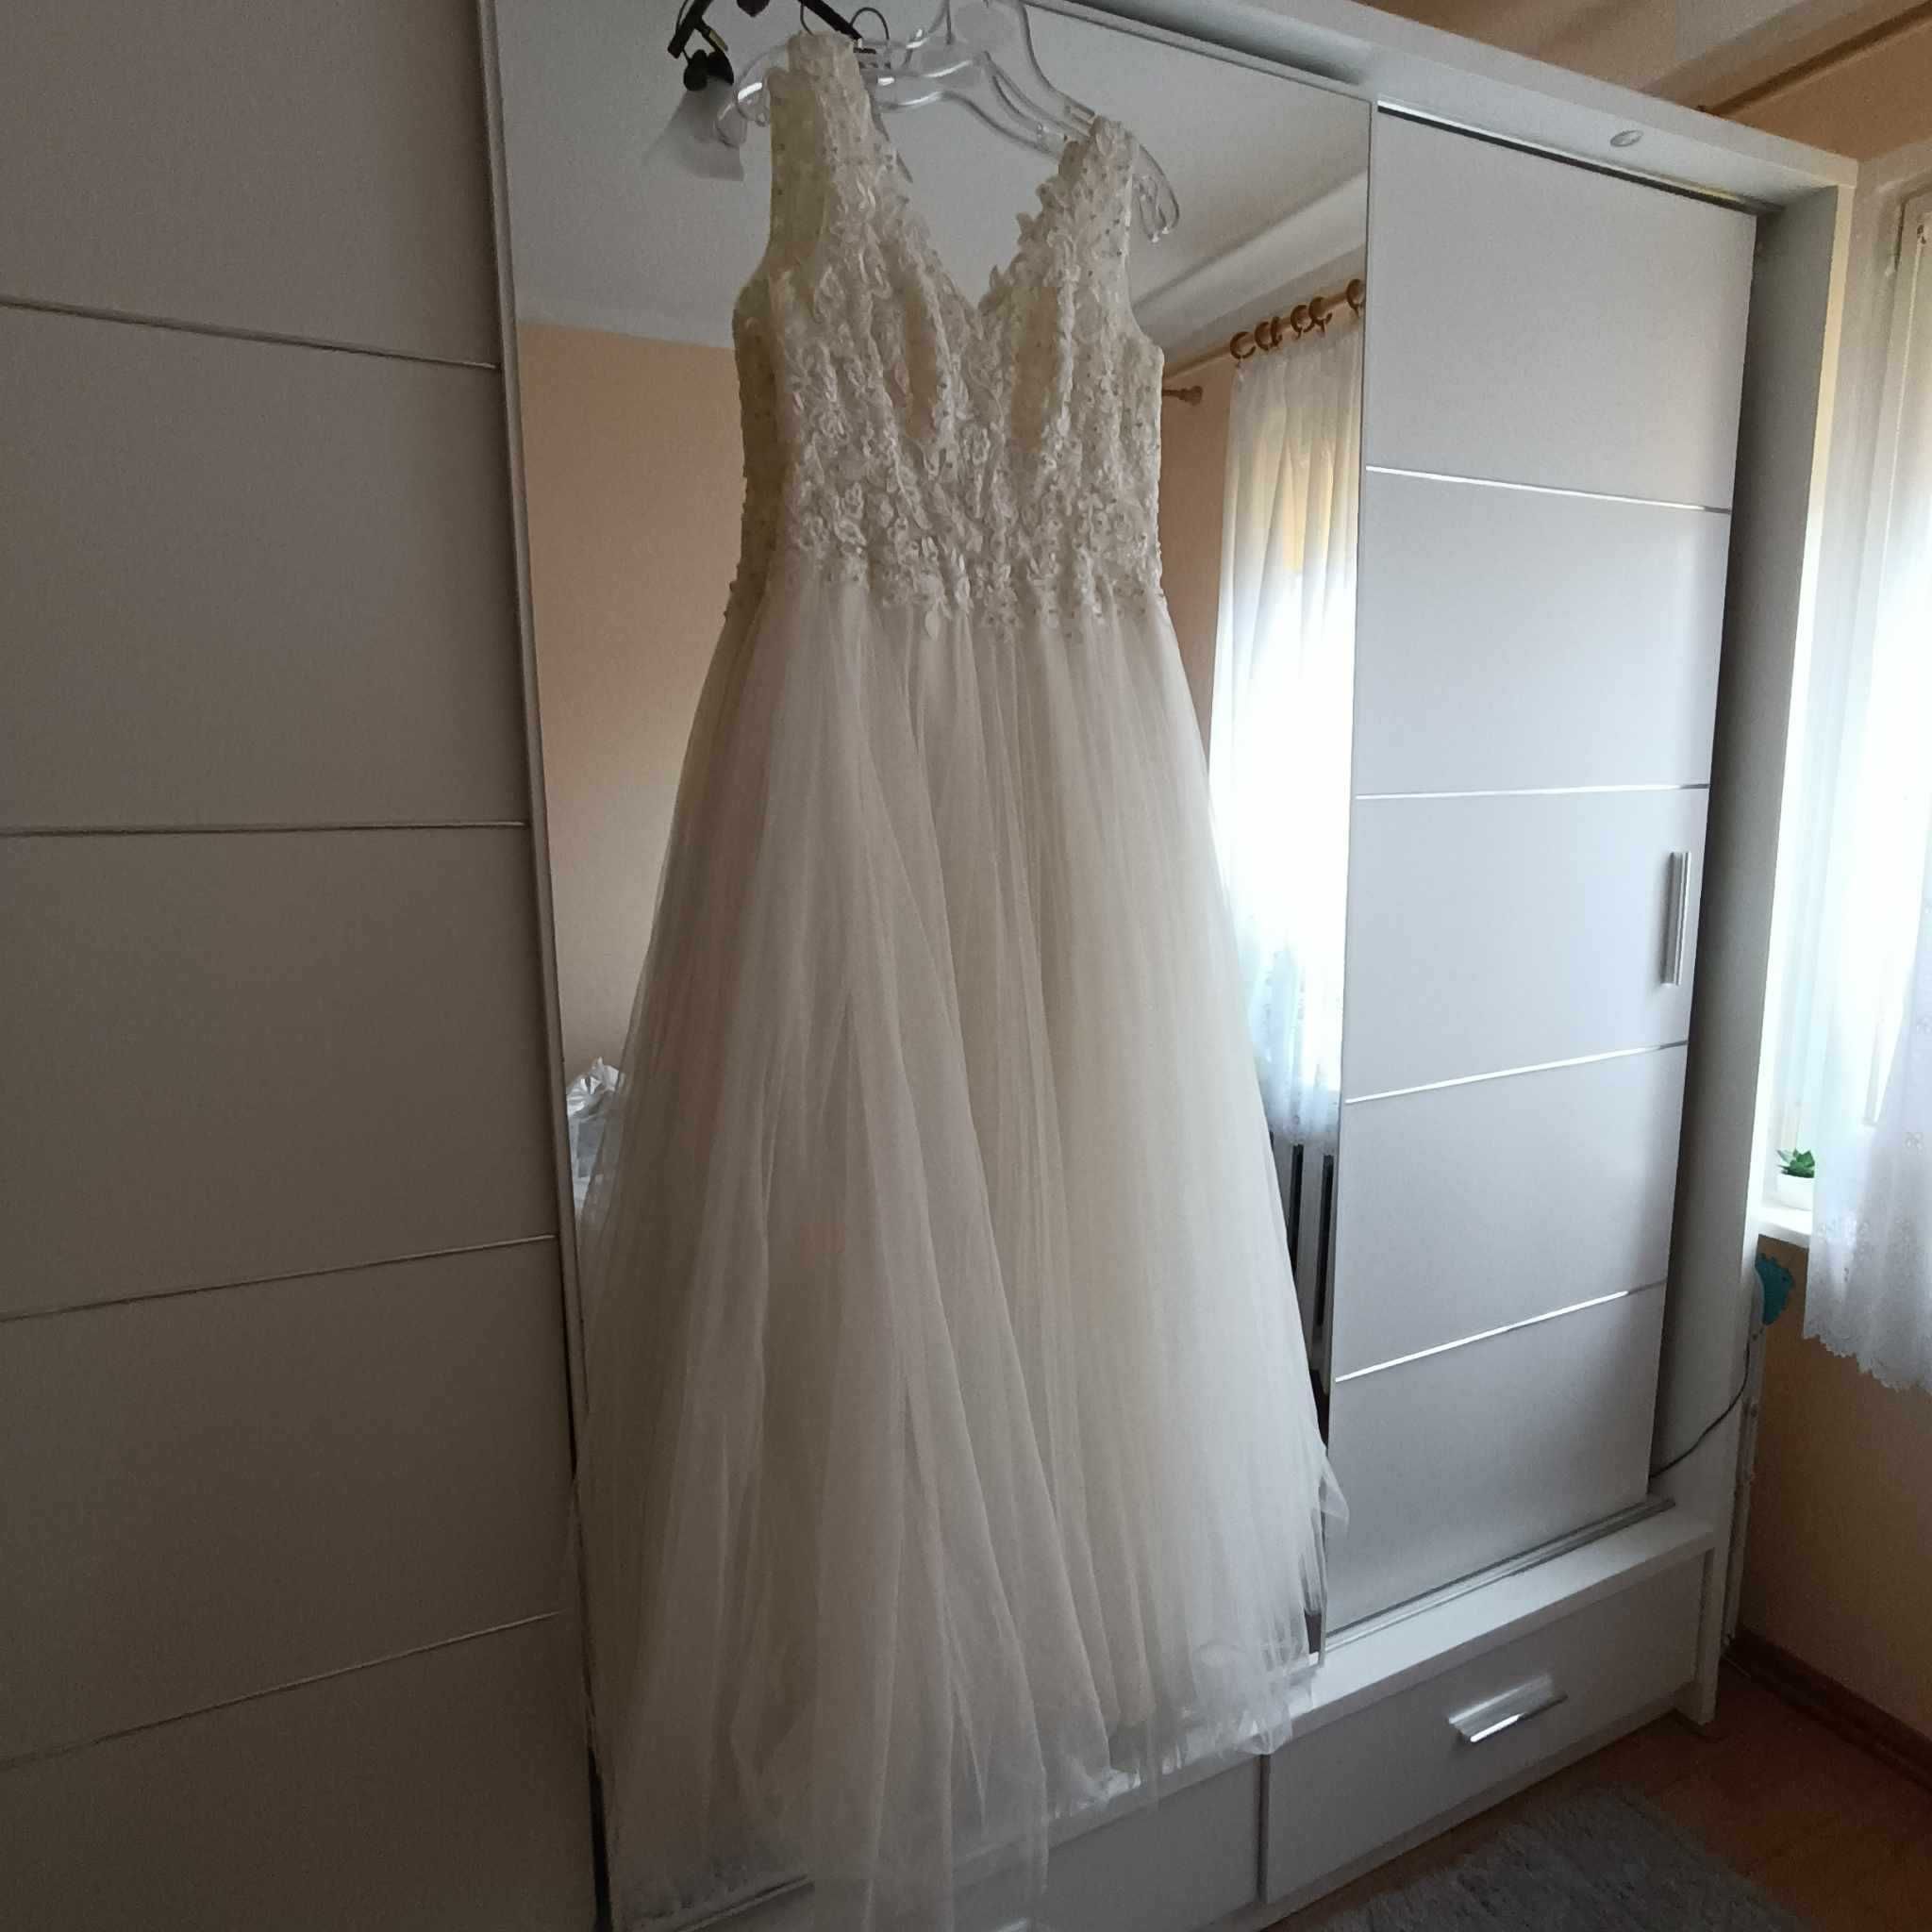 suknia ślubna na wzrost 165 rozmiar 38+welon długi gratis